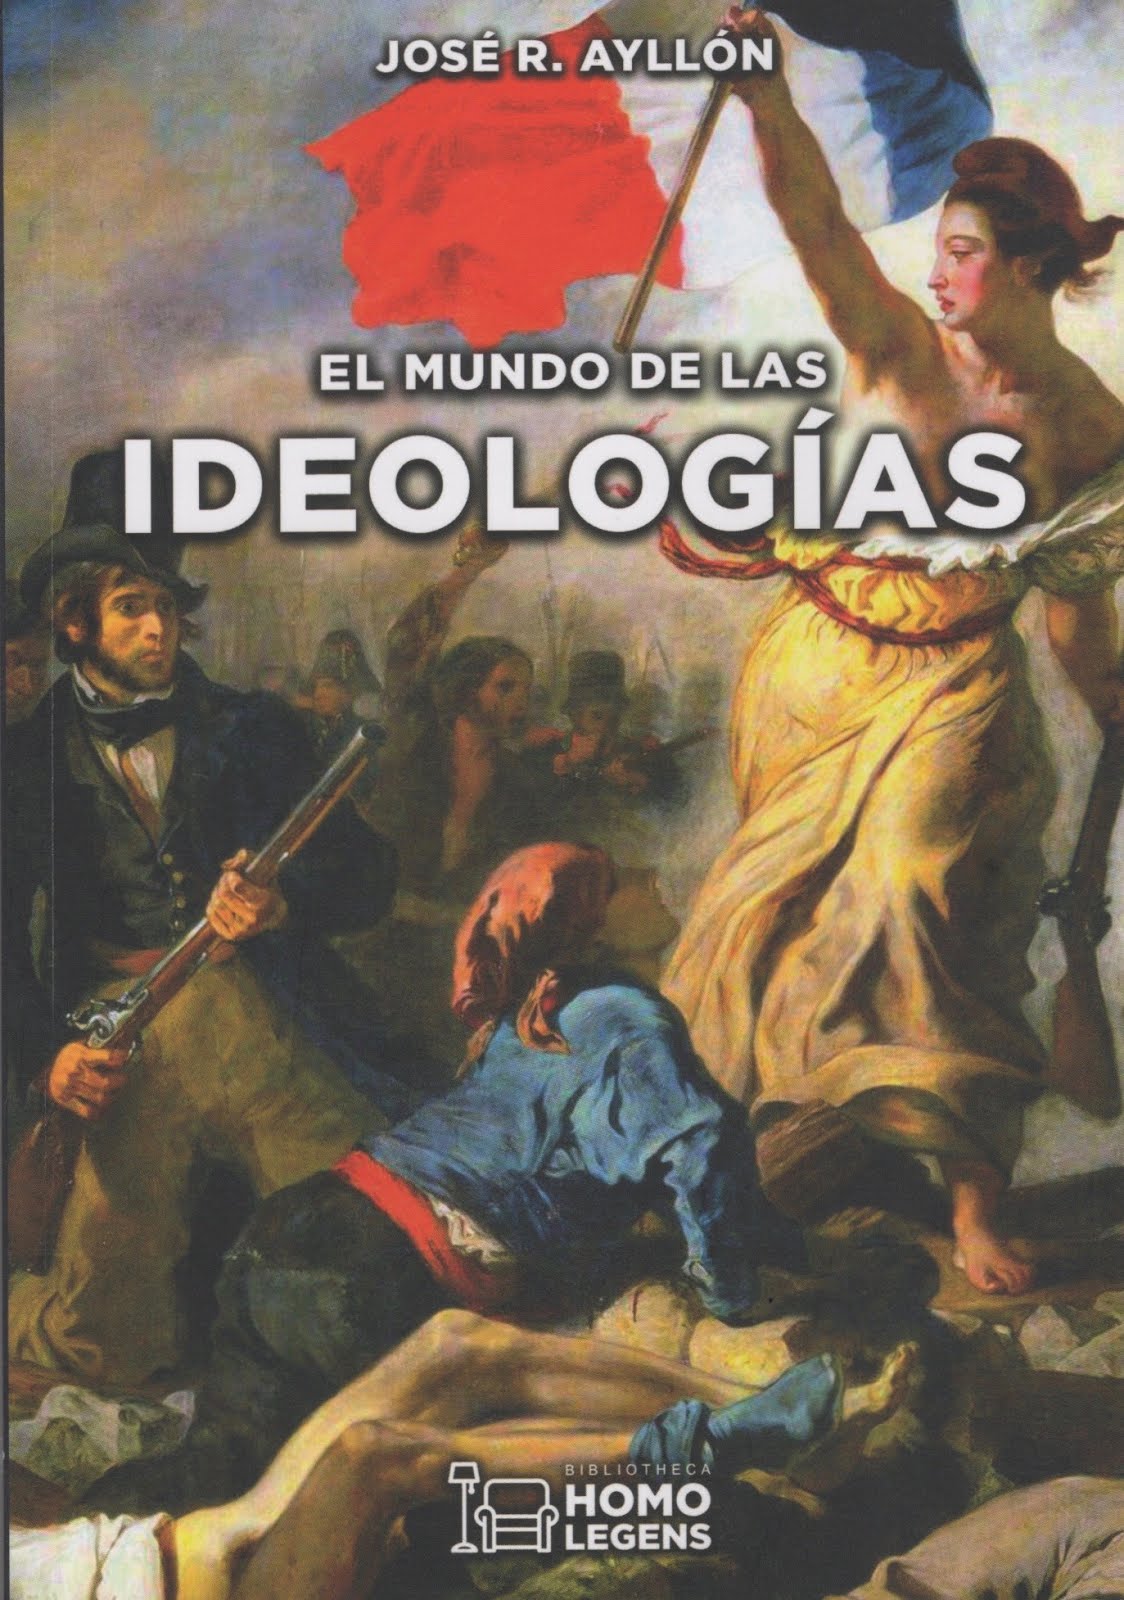 José Ramón Ayllón (El mundo de las ideologías)